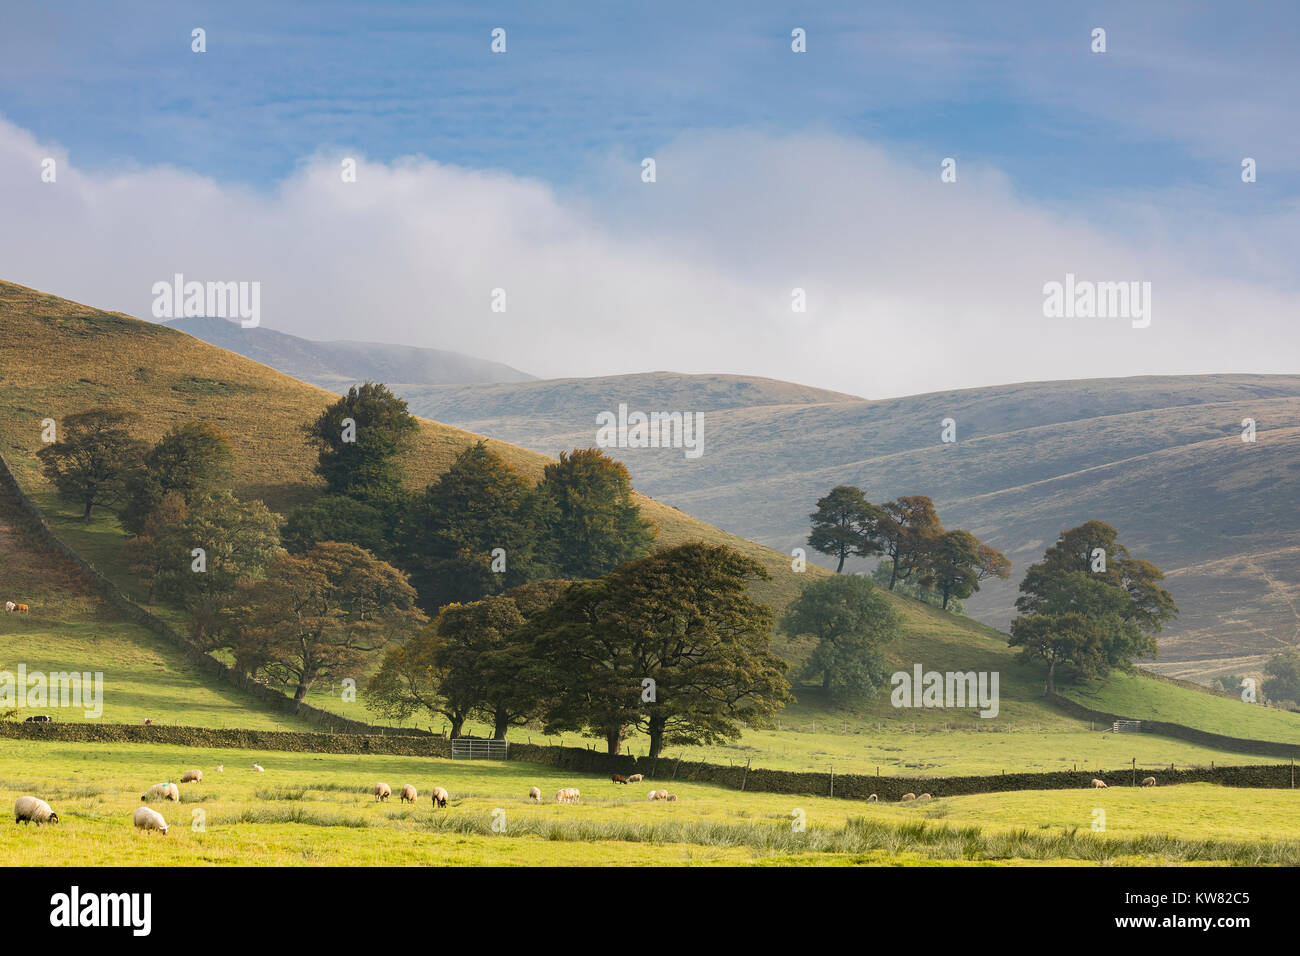 Una imagen de un grupo de árboles en el Misty Hills del valle de Edale, Derbyshire, Inglaterra, Reino Unido. Edale es una parte del Peak District National Park. Foto de stock